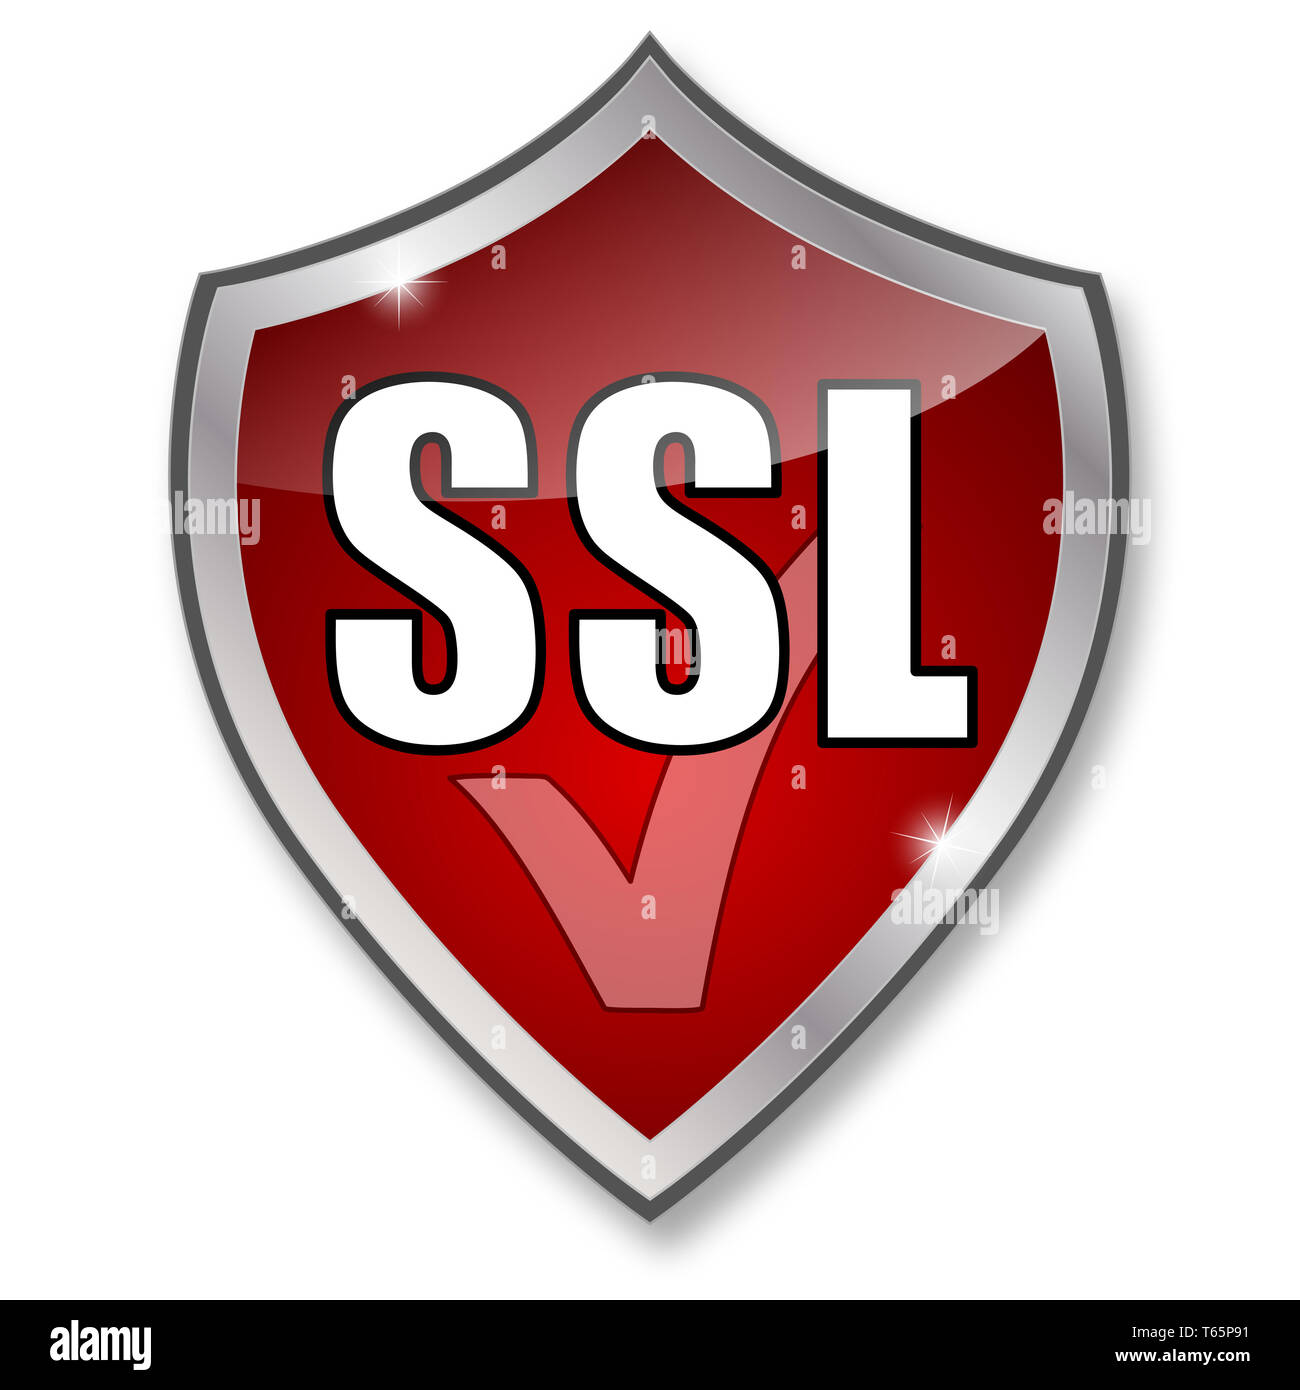 Le cryptage SSL - Sécurité internet ordinateur il Banque D'Images